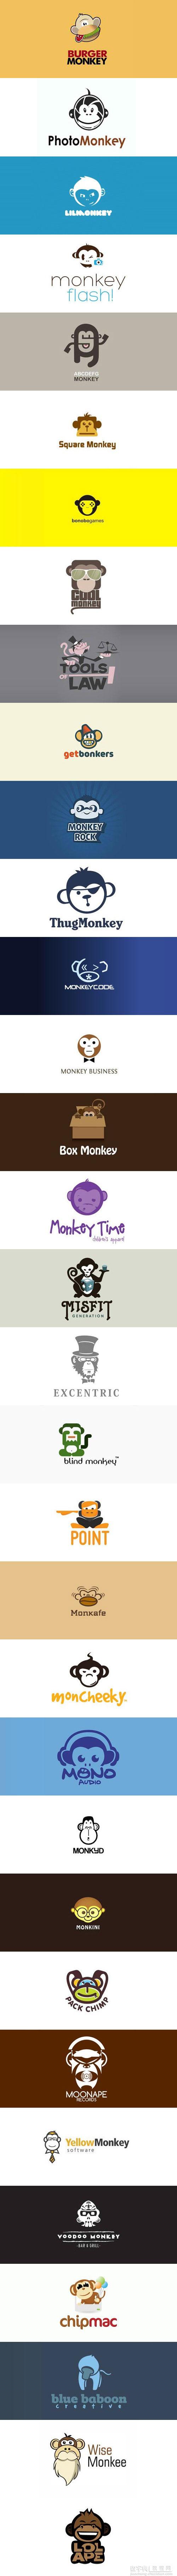 2016年猴子Logo欣赏！1